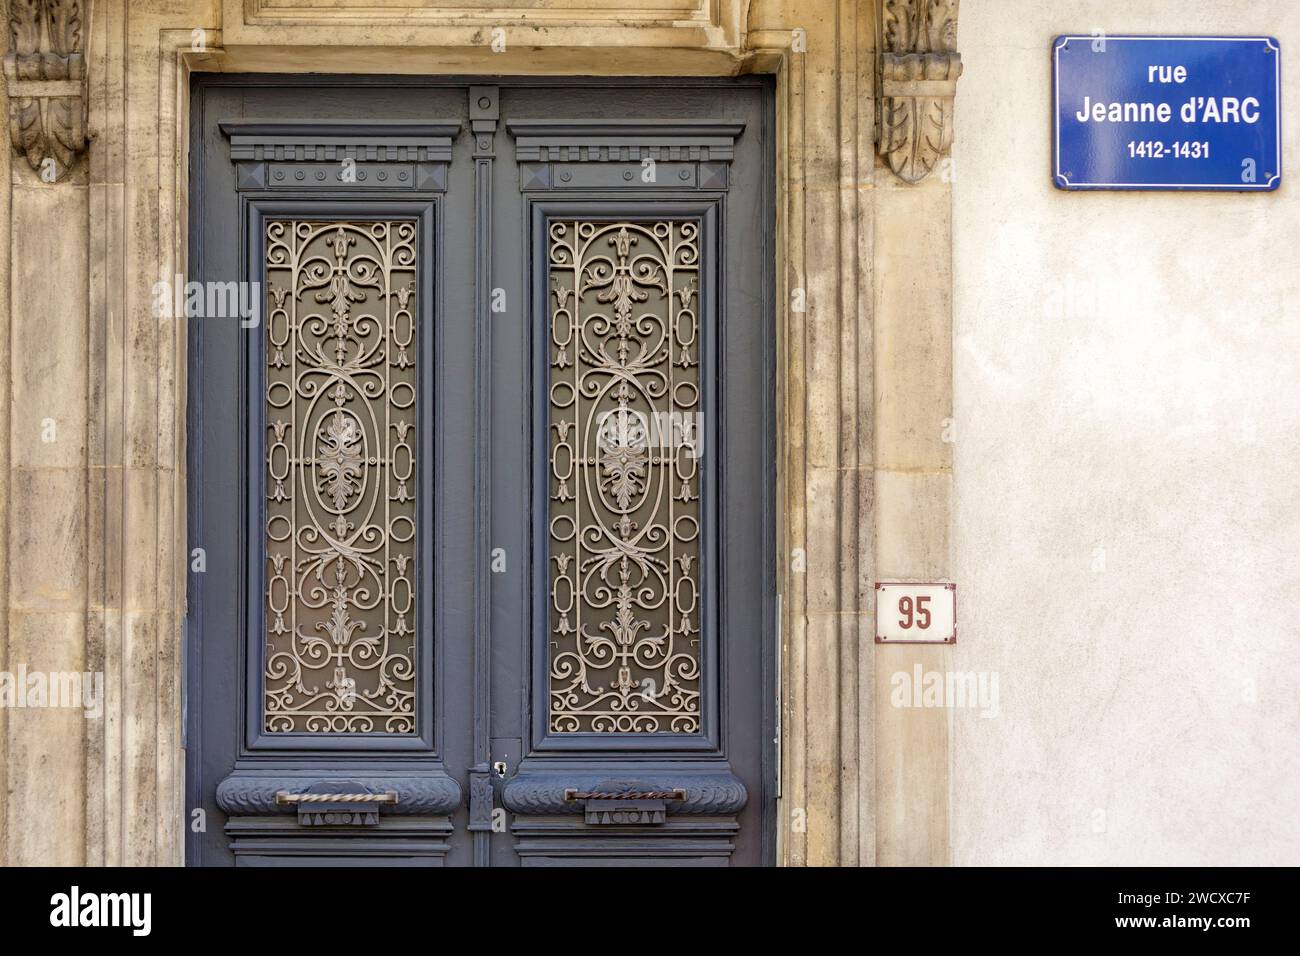 Francia, Meurthe et Moselle, Nancy, puerta de un edificio de apartamentos y placa de la calle situado Rue Jeanne d'Arc Foto de stock